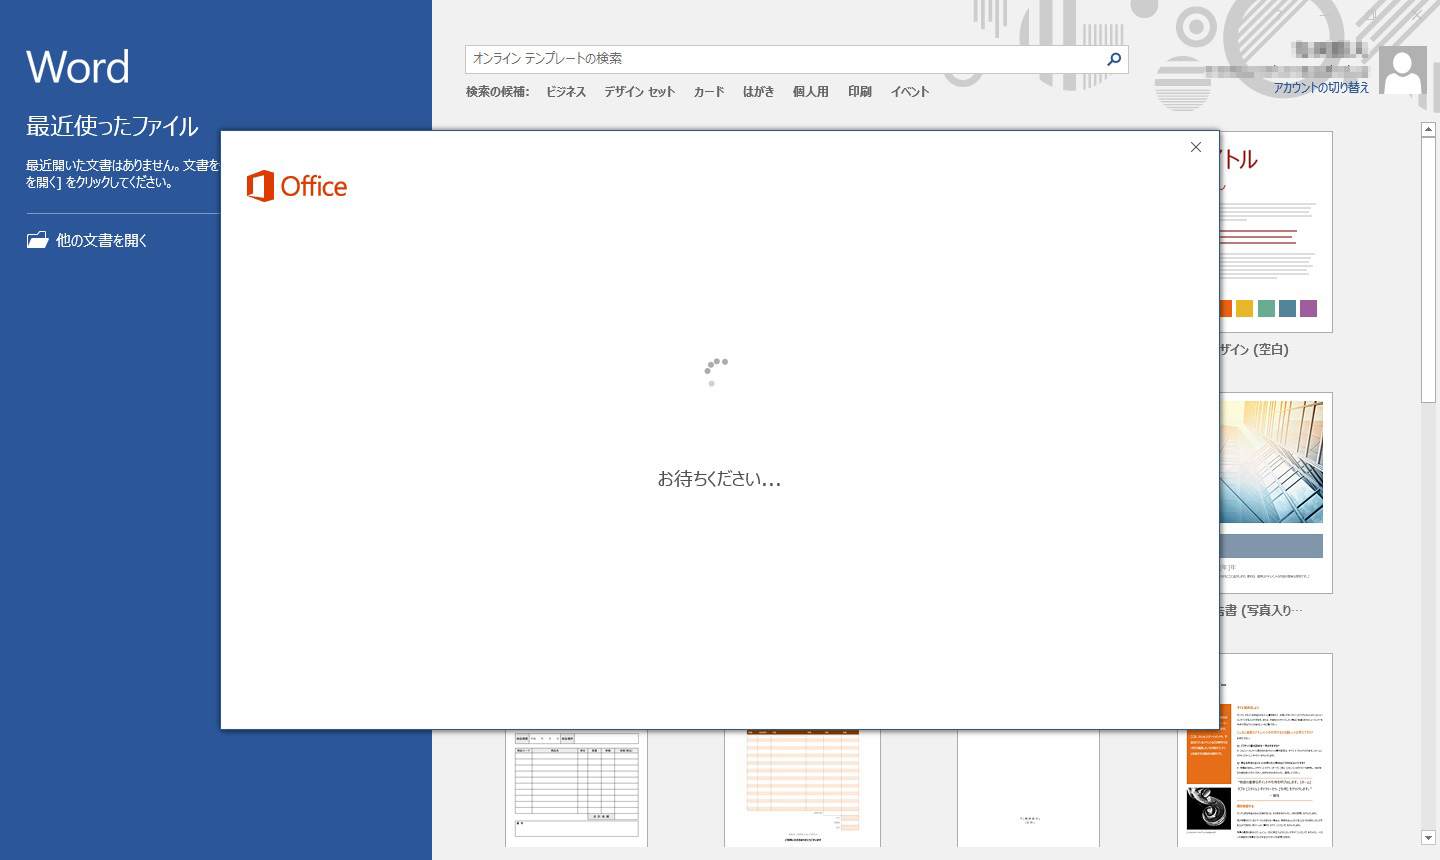 Office 2016 プレインストール PC に関するご注意 - Microsoft Office 2016